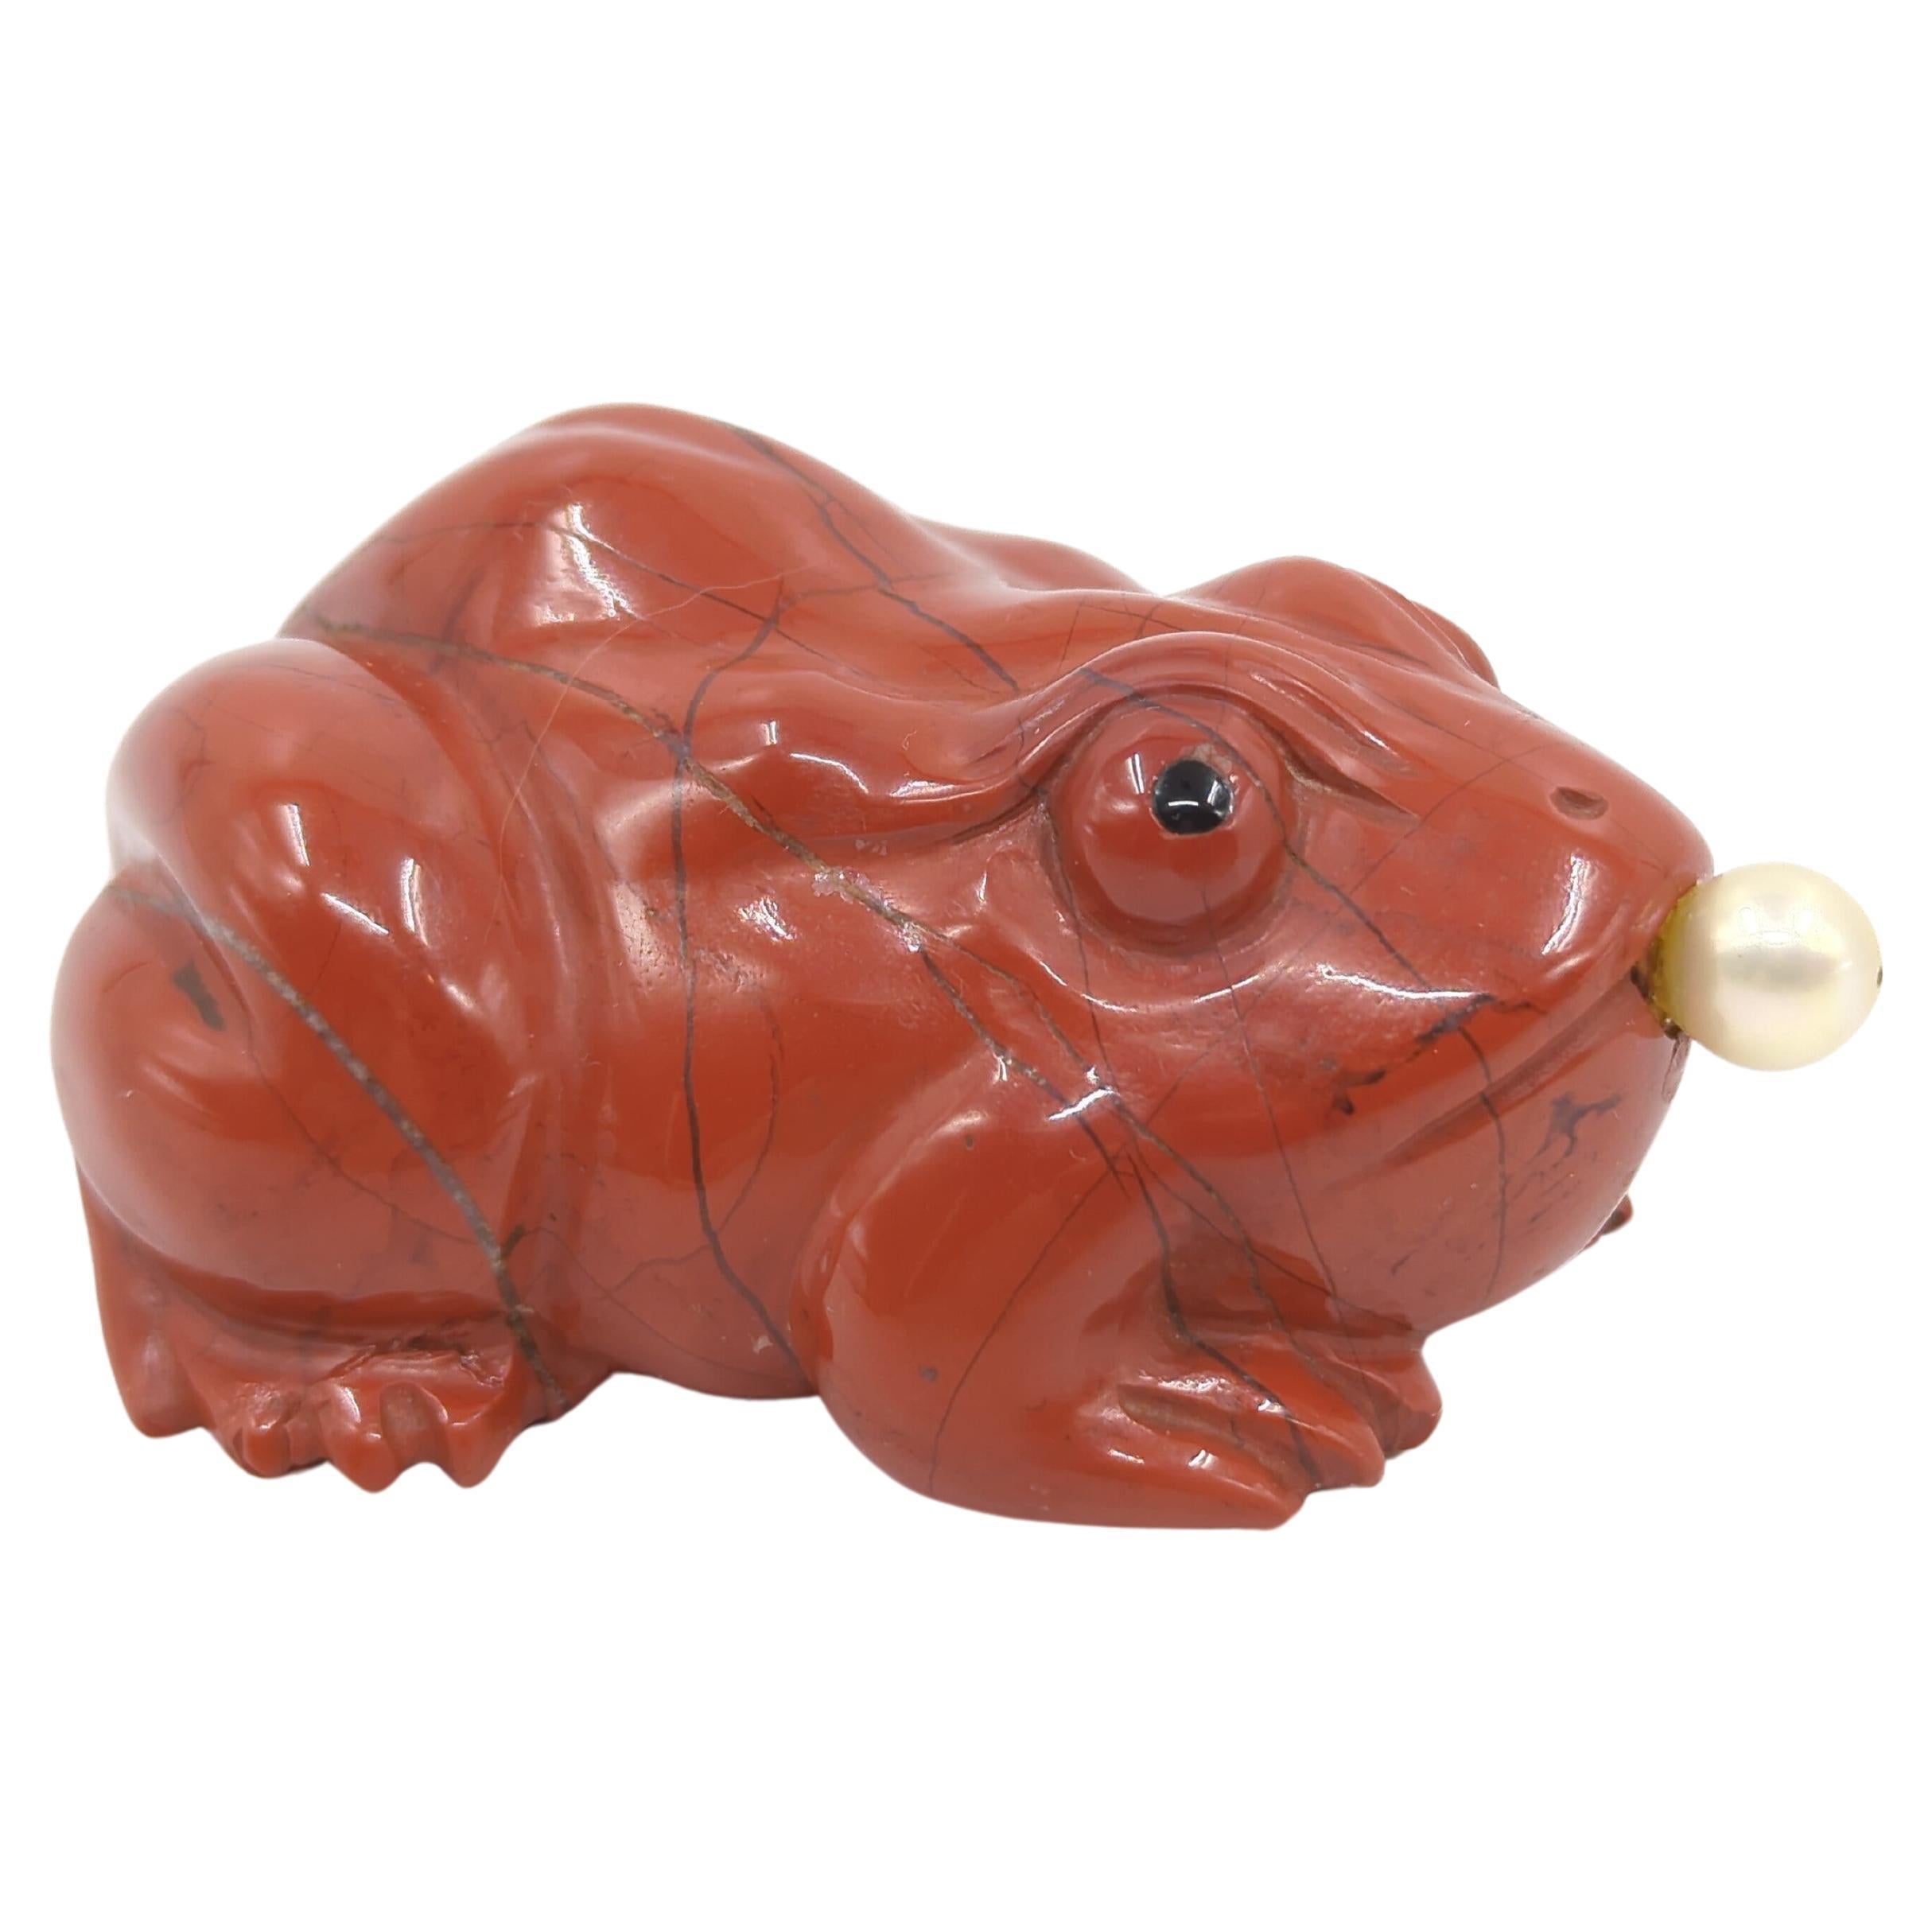 Eine große, antike chinesische, handgeschnitzte Schnupftabakflasche aus rotem Jaspis in Form eines sitzenden Frosches, lebensecht in Größe und Details, mit schwarz gemalten Augen, mit einem Perlenstopfen am Mund, der an einem spitzen Metalllöffel